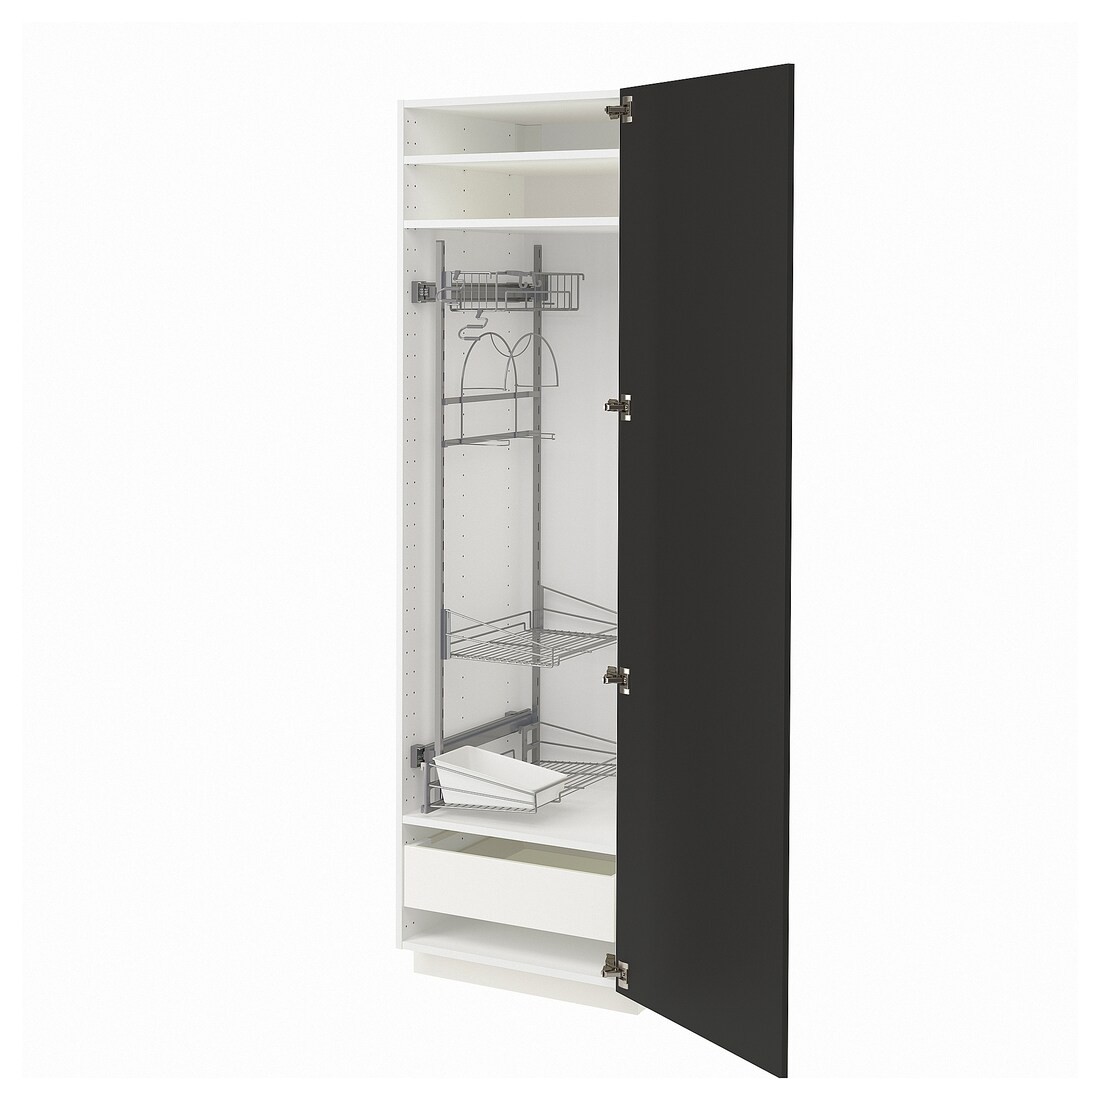 METOD МЕТОД / MAXIMERA МАКСИМЕРА Высокий шкаф с отделением для аксессуаров для уборки, белый / Nickebo матовый антрацит, 60x60x200 см